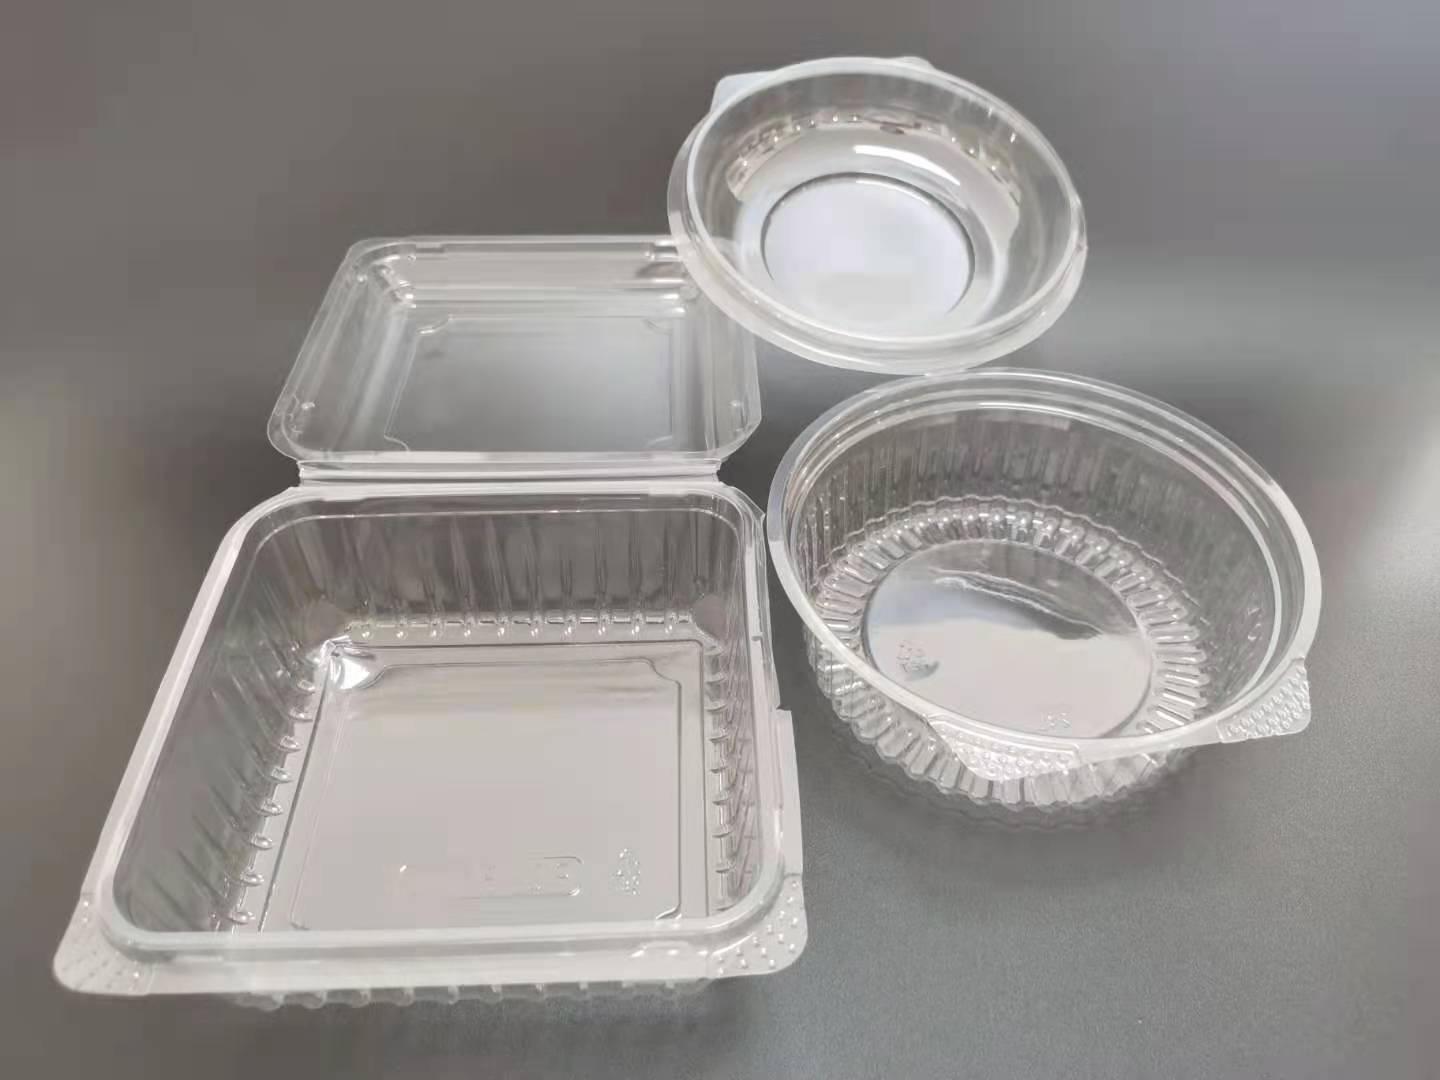 透明吸塑盒-多少钱、生产厂家、批发价格-中山市协佳包装制品有限公司